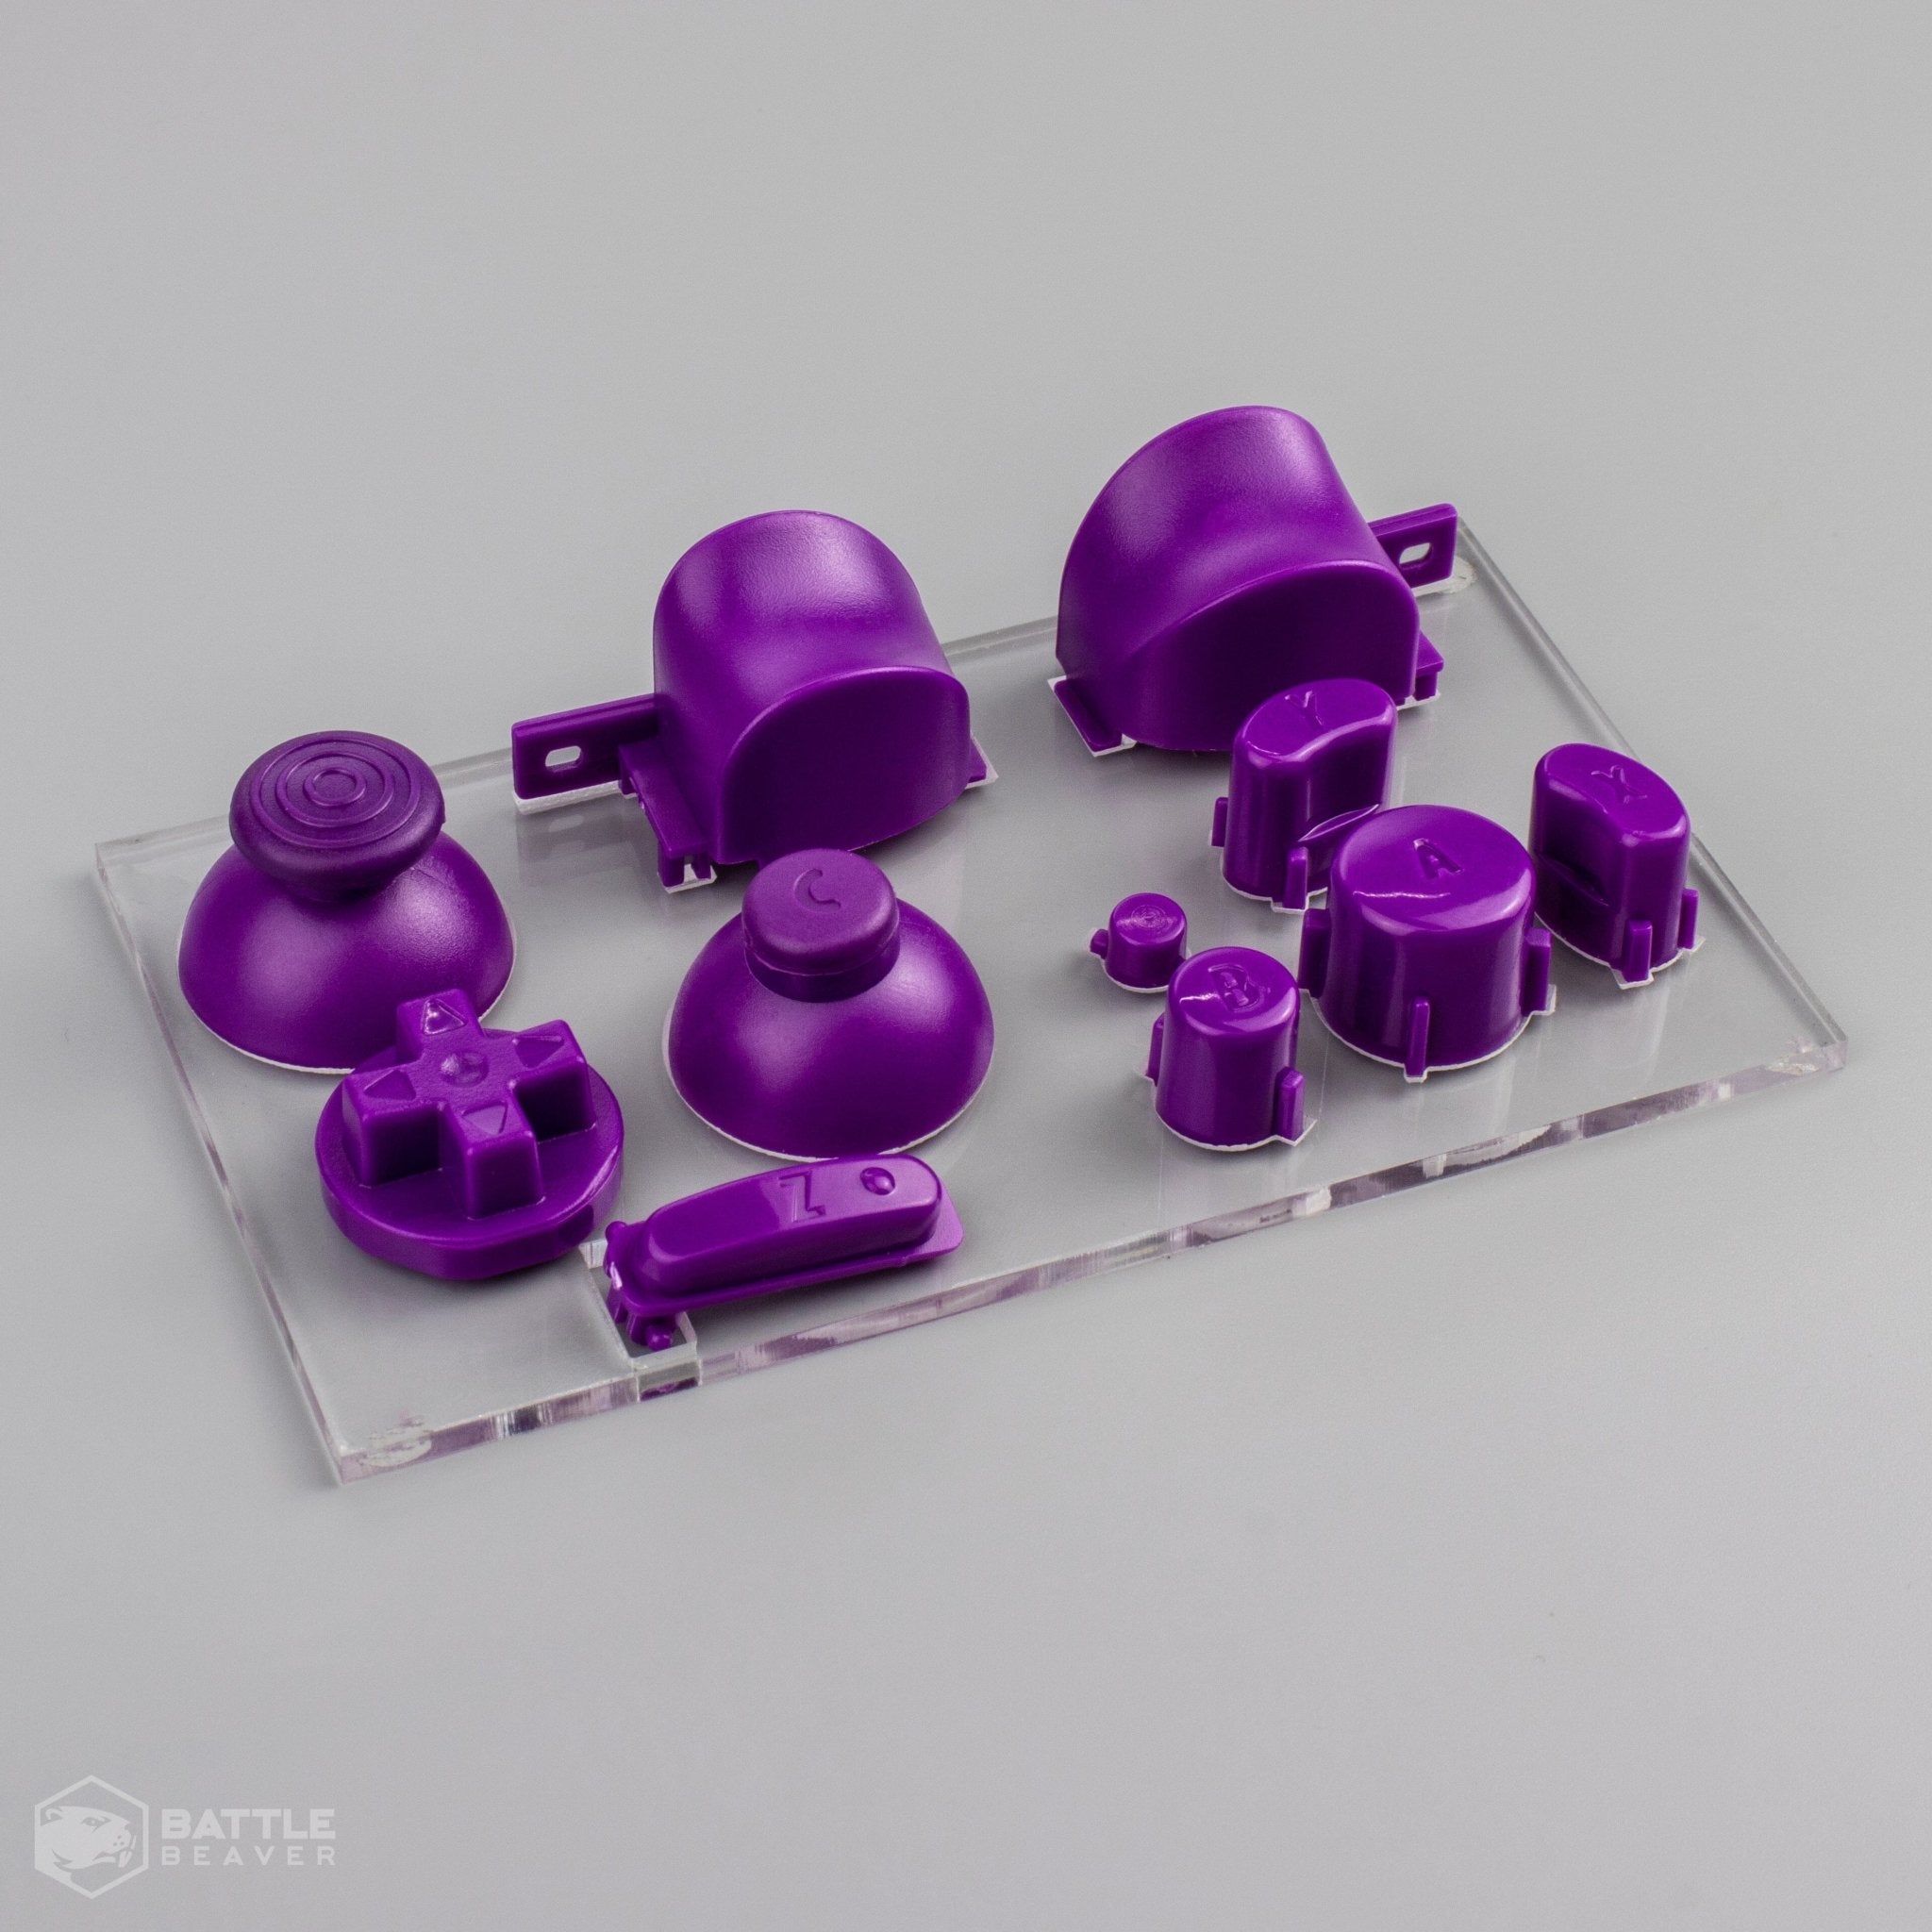 3rd Party Gamecube Parts Kit - Battle Beaver Customs - Purple